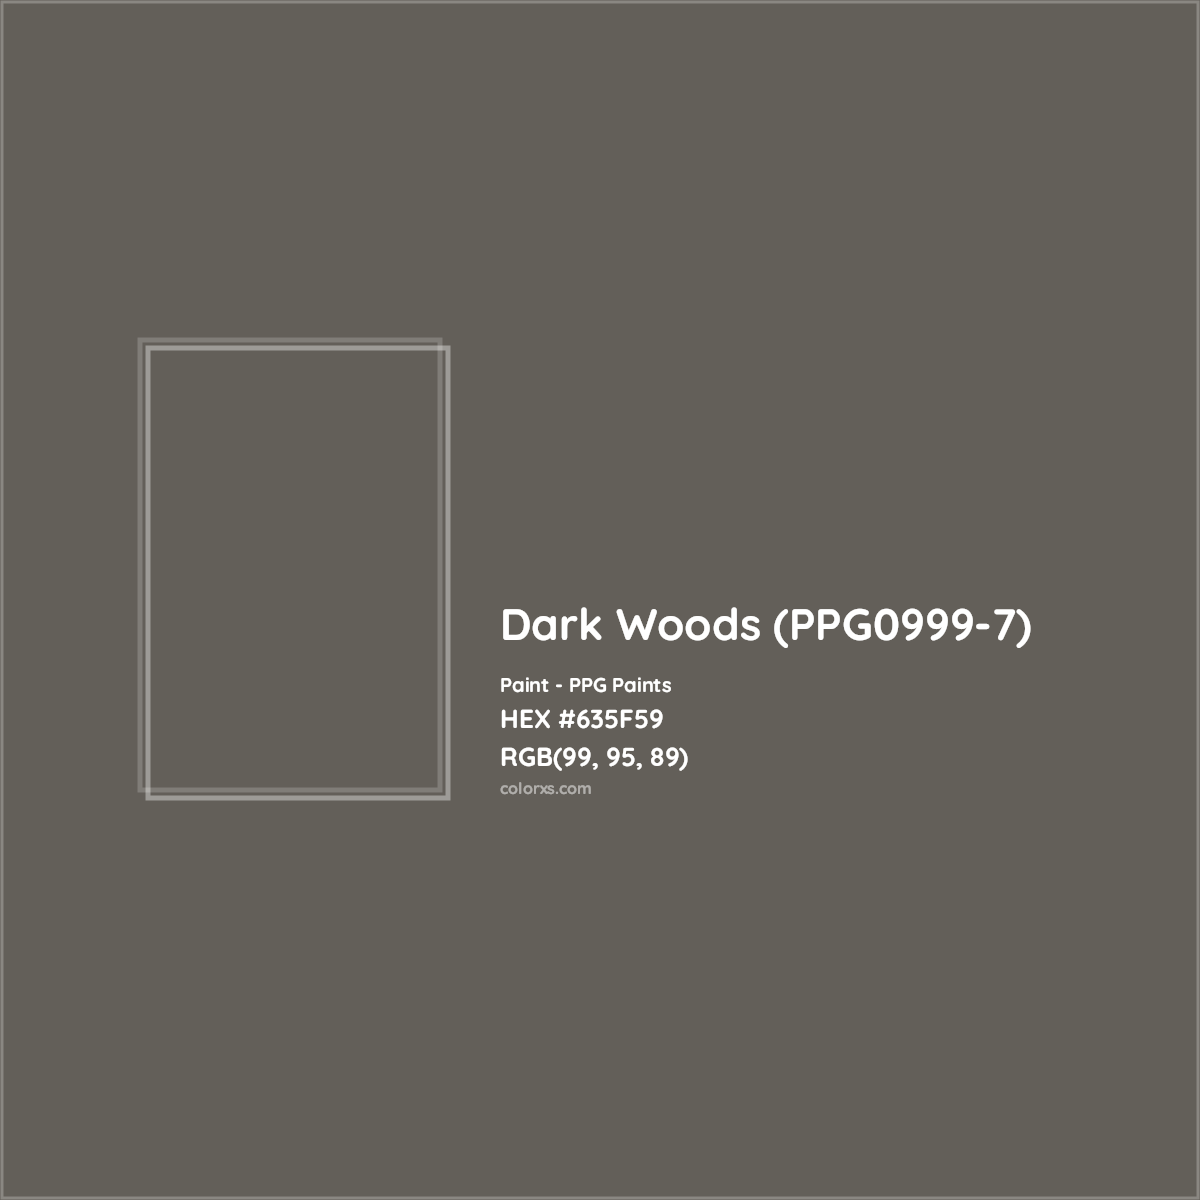 HEX #635F59 Dark Woods (PPG0999-7) Paint PPG Paints - Color Code